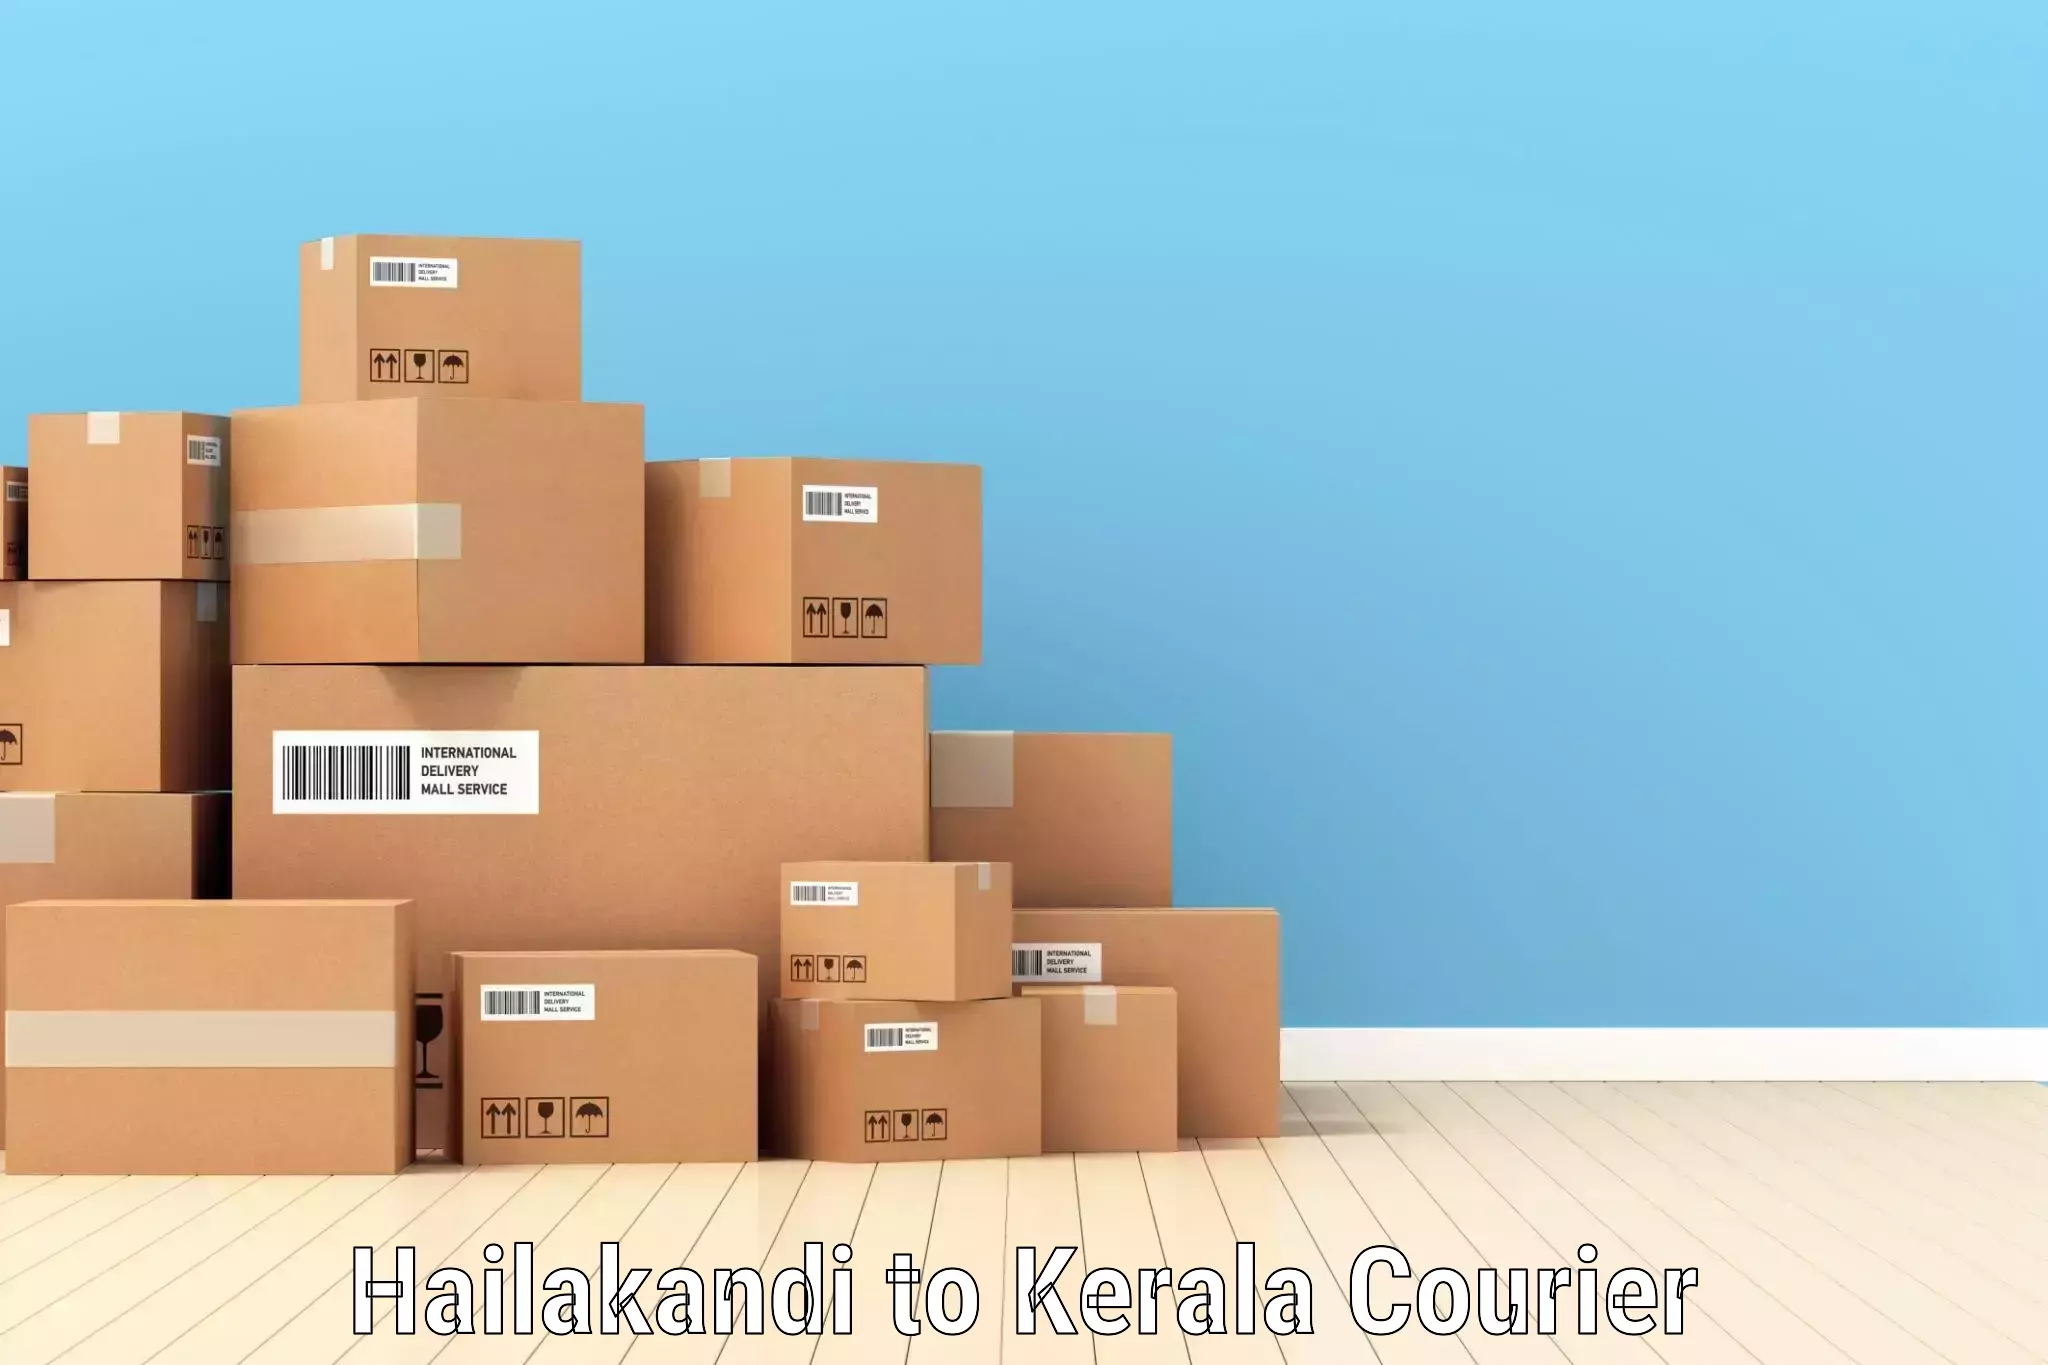 Rural area delivery Hailakandi to Cochin Port Kochi